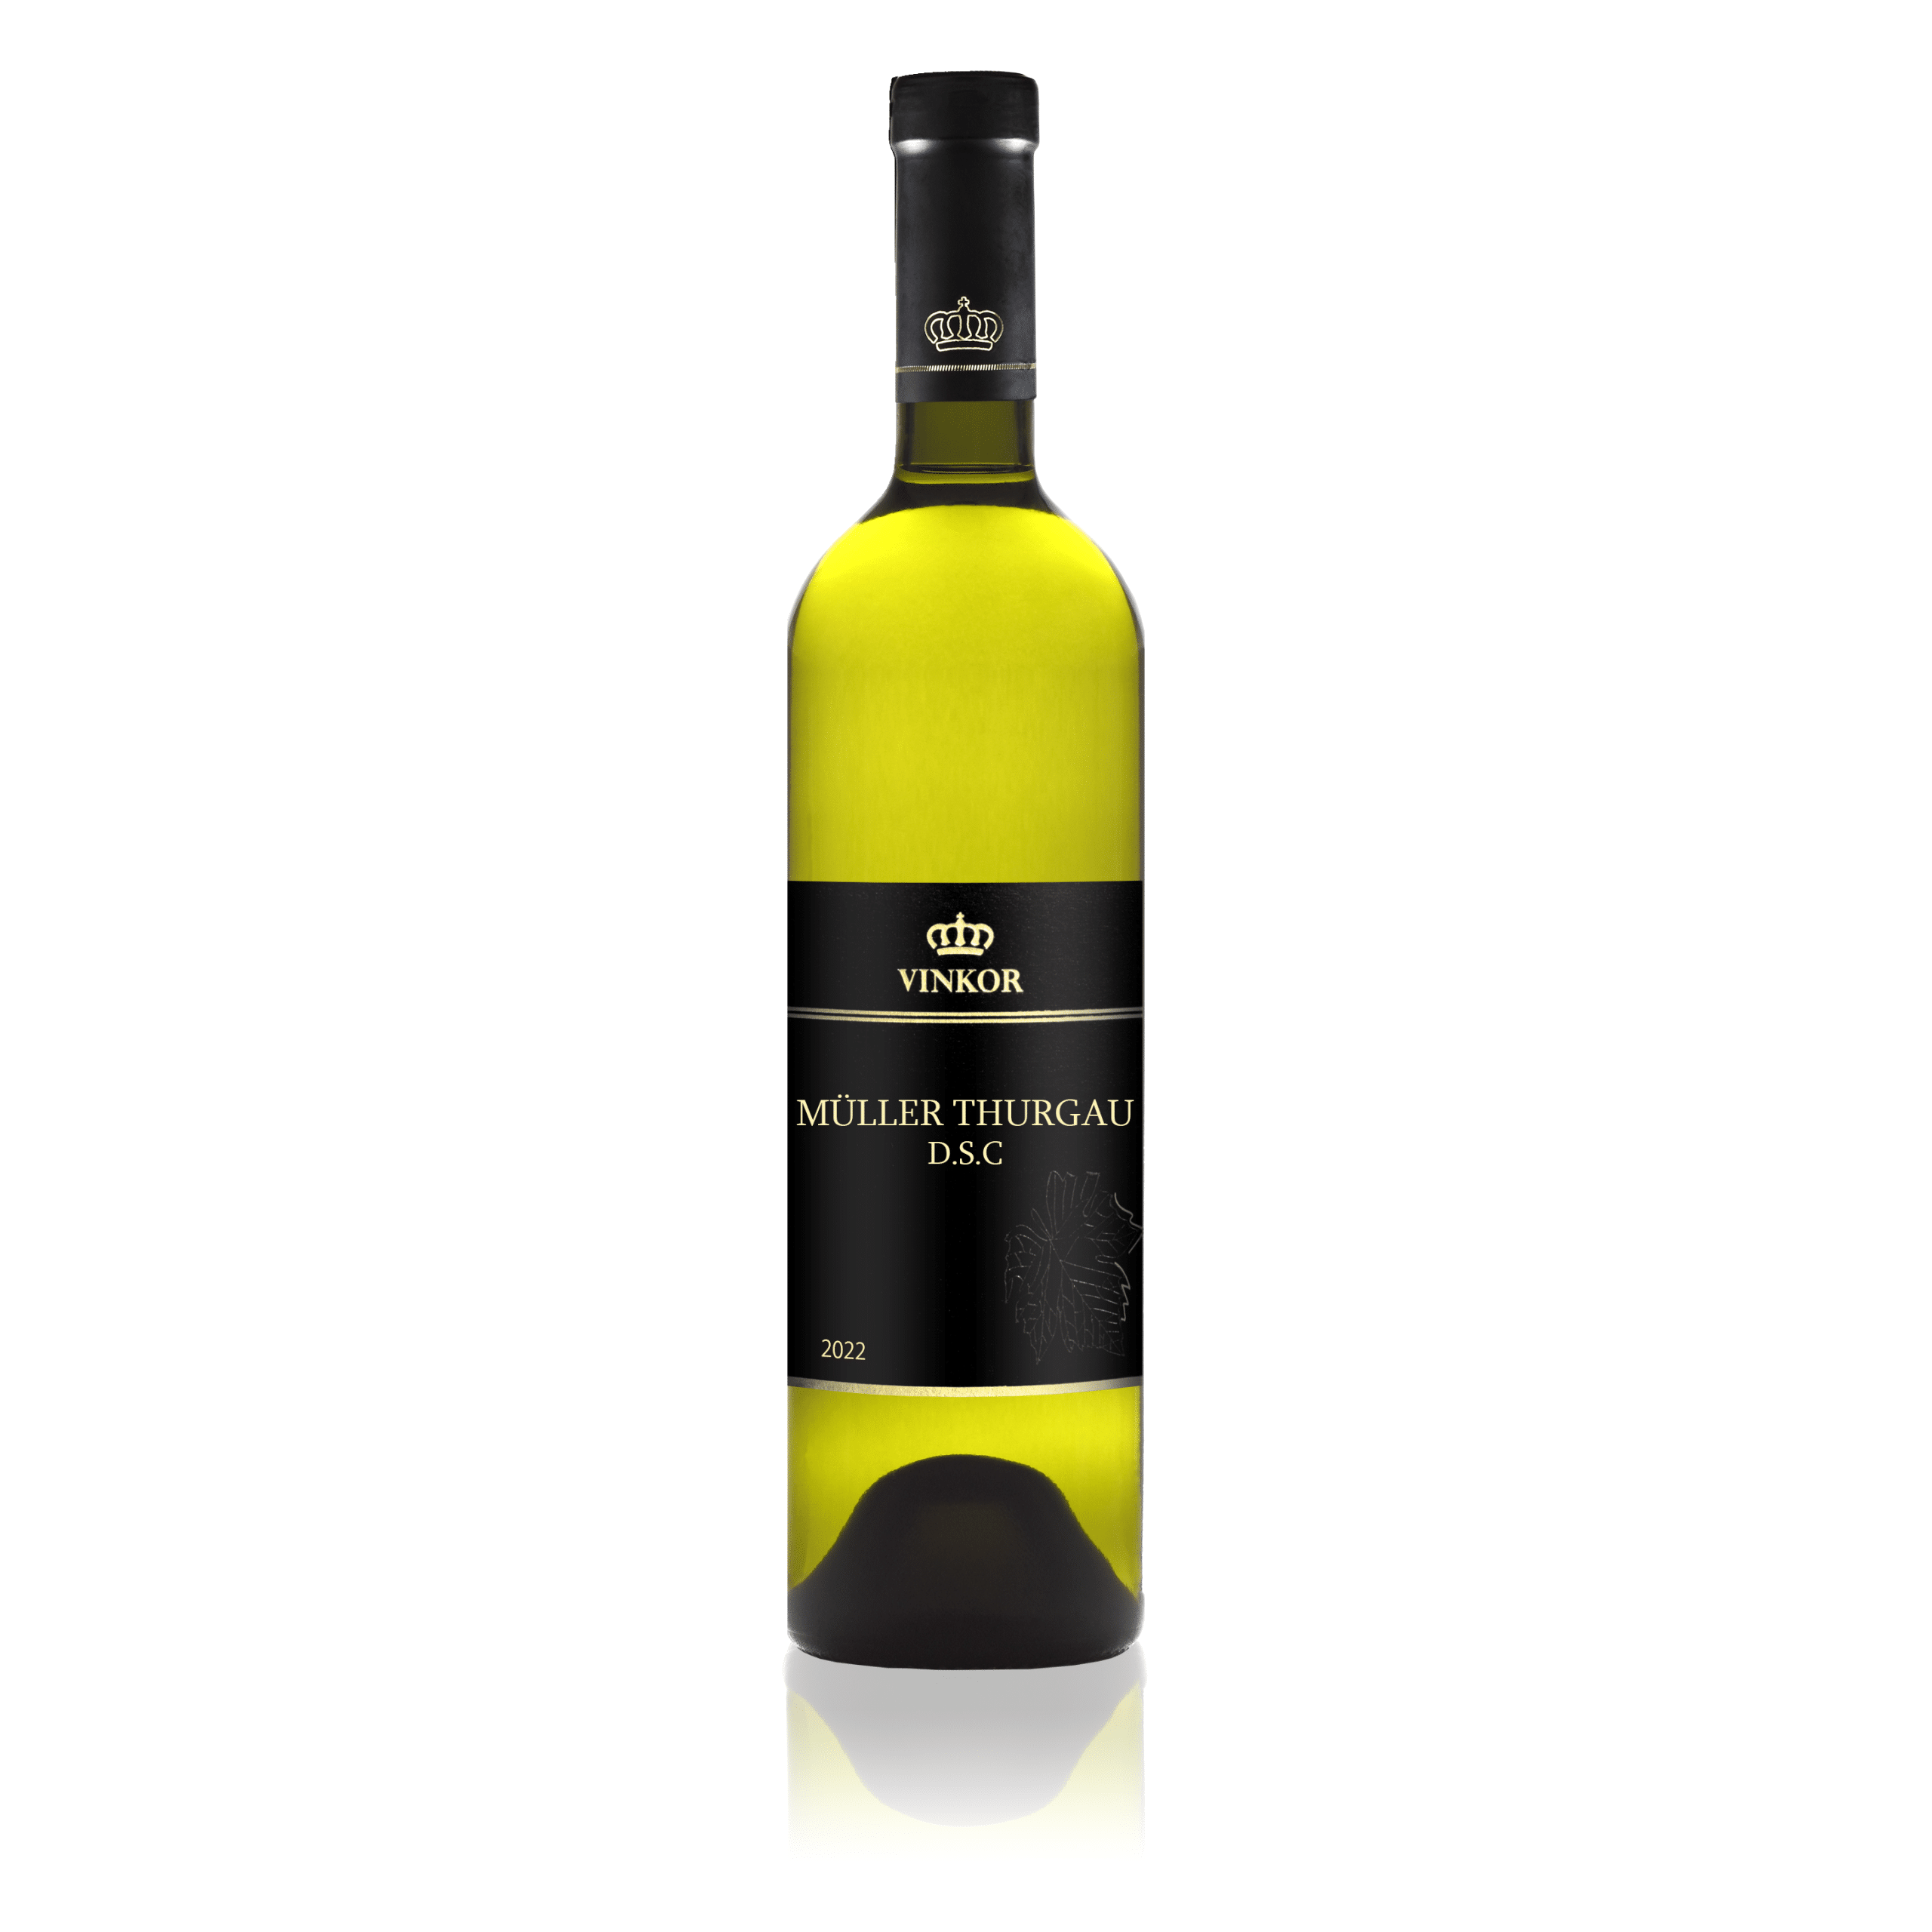 Biele suché víno Müller Thurgau 2022 z rodinného vinárstva Vinkor z Malých Karpát